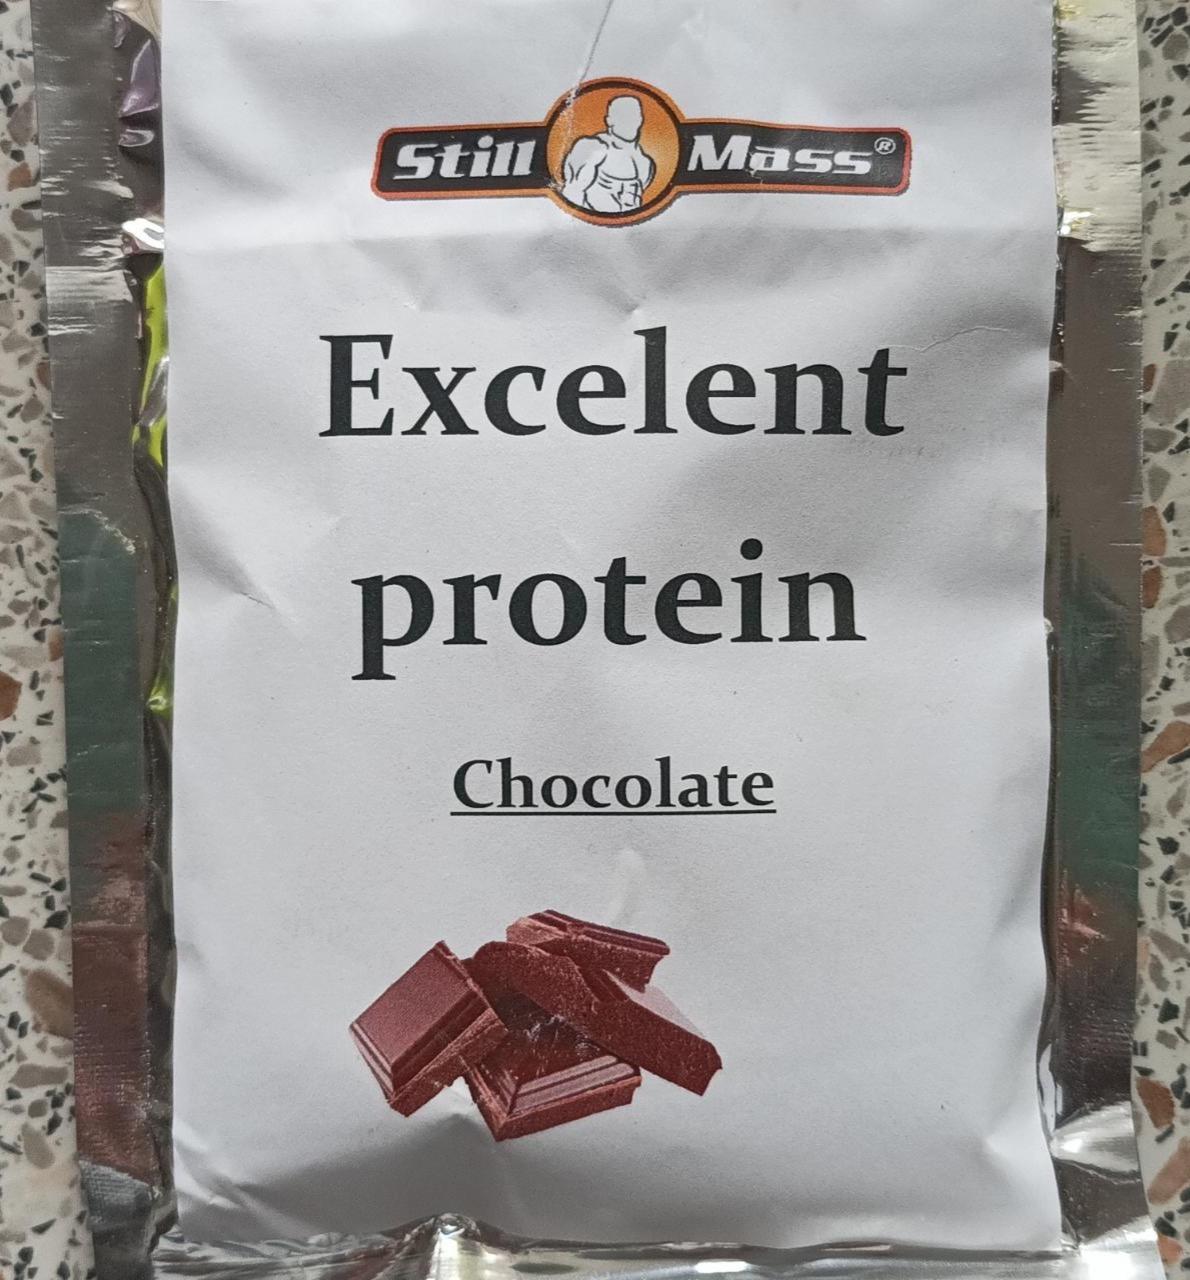 Képek - Excelent whey protein Chocolate Still mass